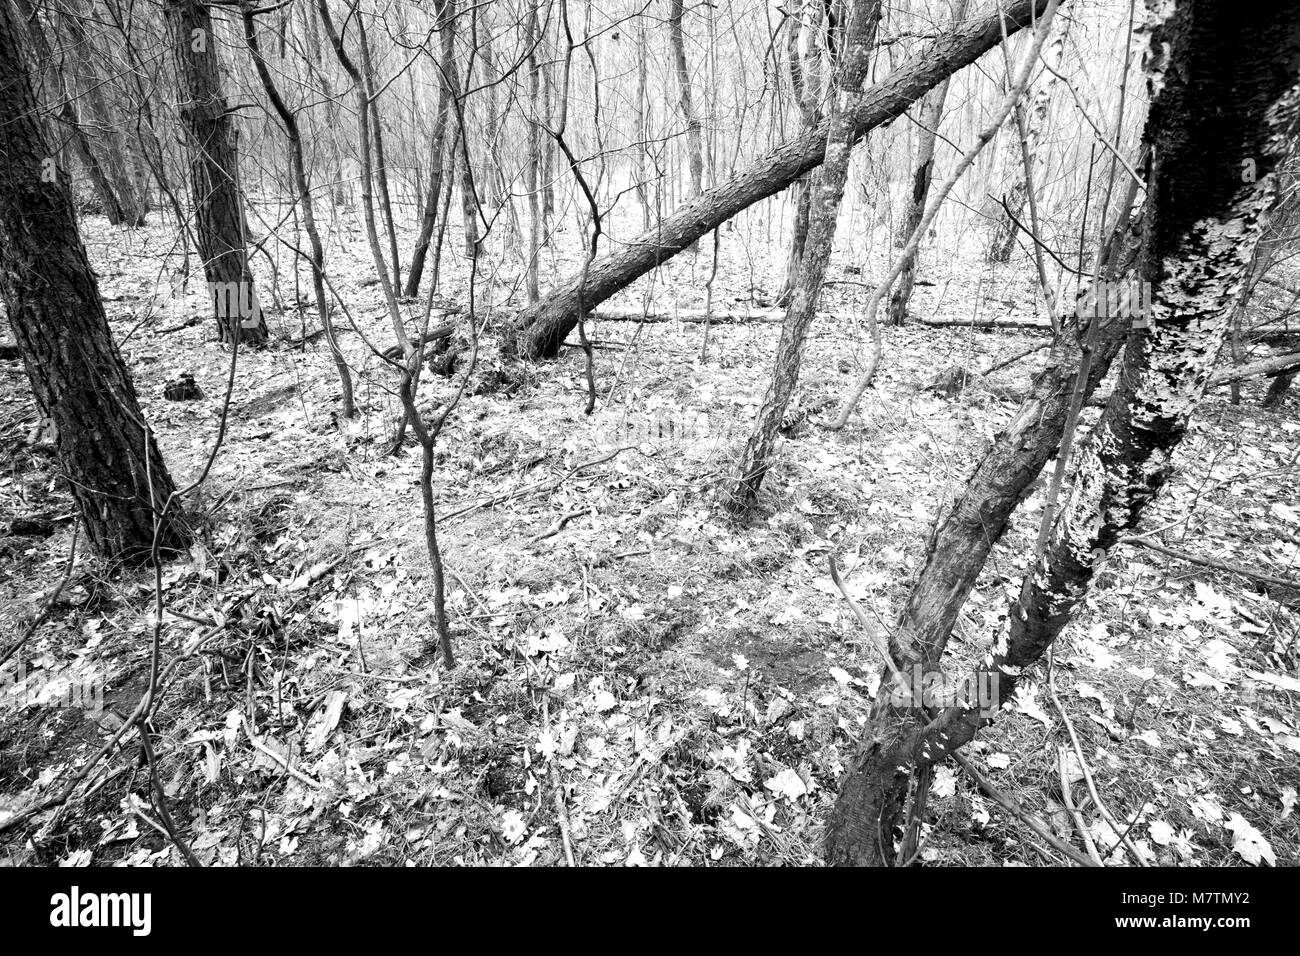 März 12, 2018 - Großpolen, Polen - Orte - der Wald und seine Umgebung in den frühen Frühling. (Bild: © dawid Tatarkiewicz über ZUMA Draht) Stockfoto